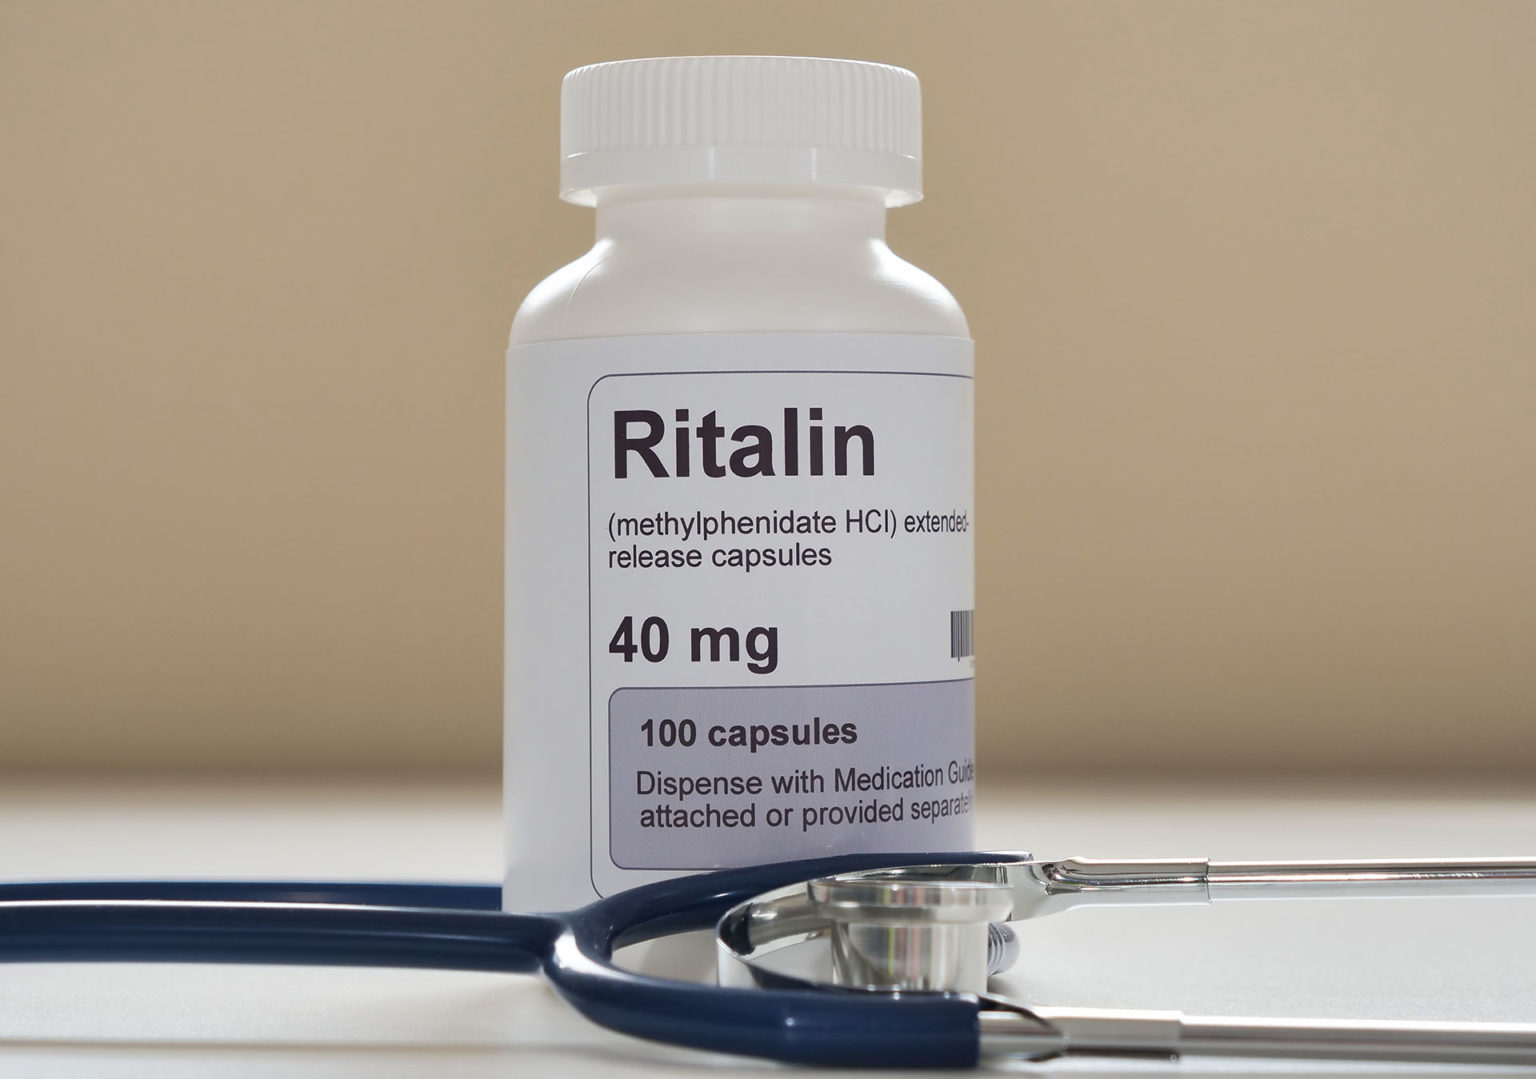 Vyvanse vs. Ritalin